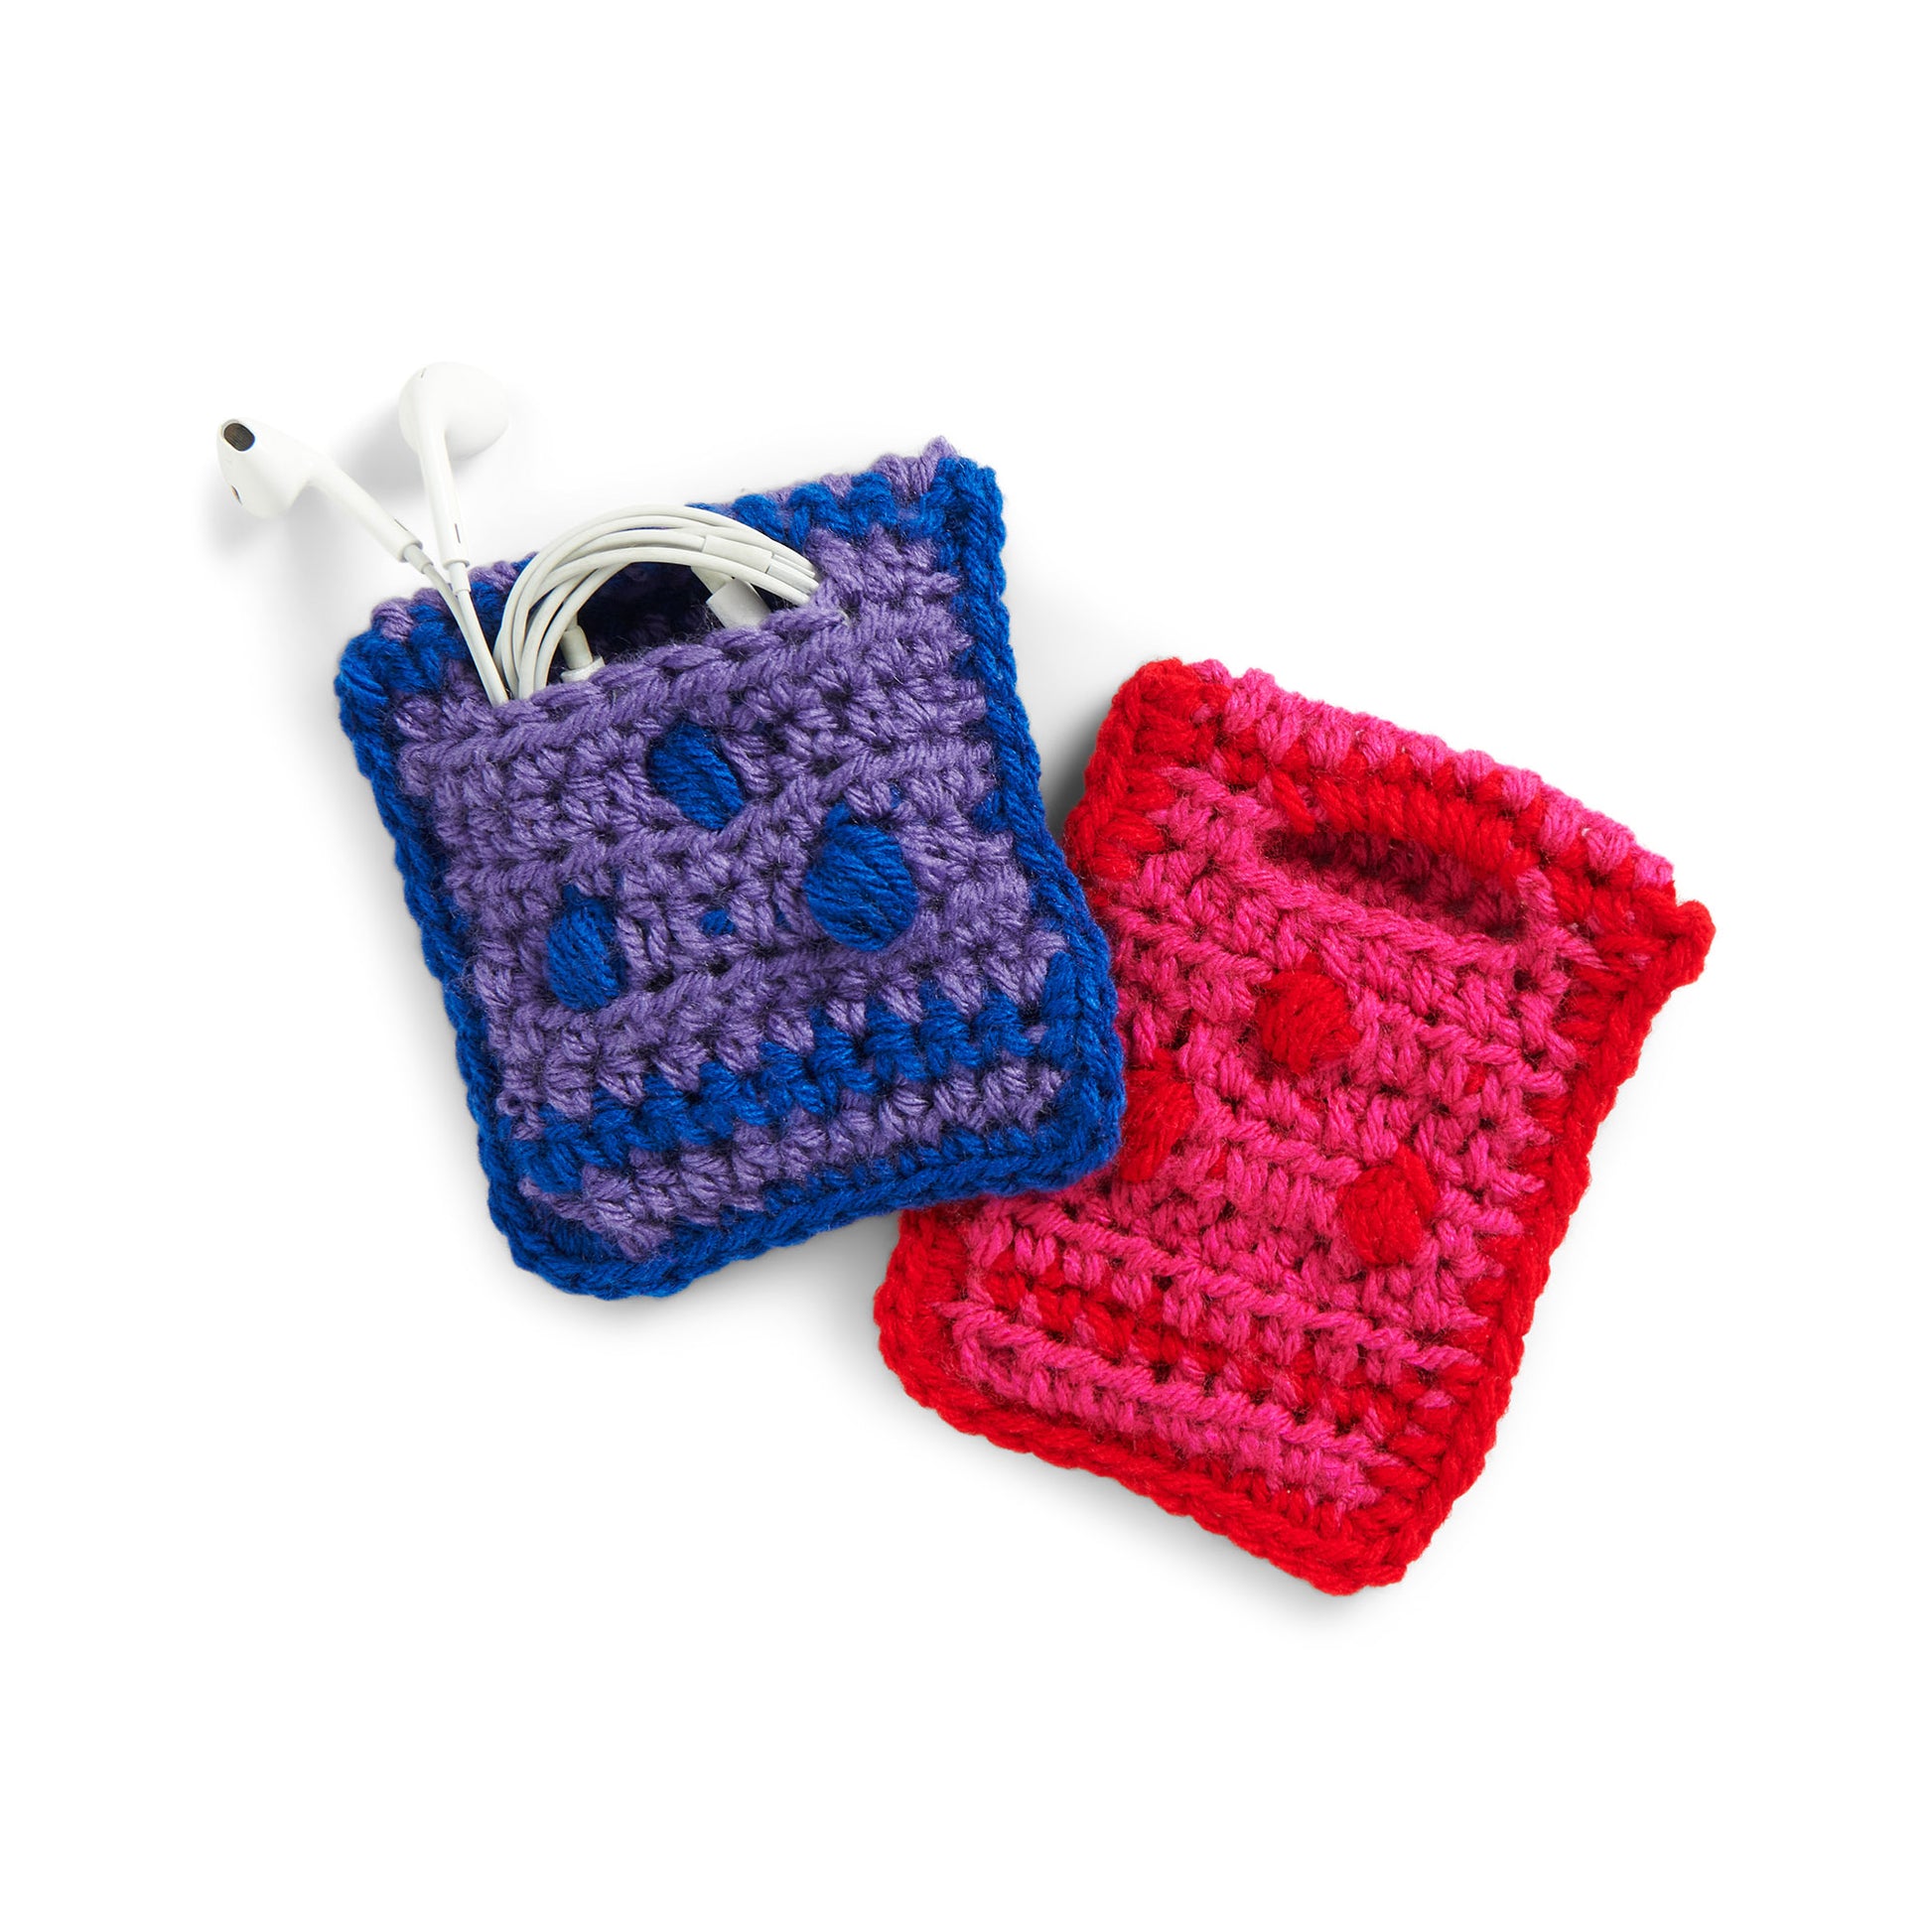 Free Red Heart Crochet Handy Pocket Pattern